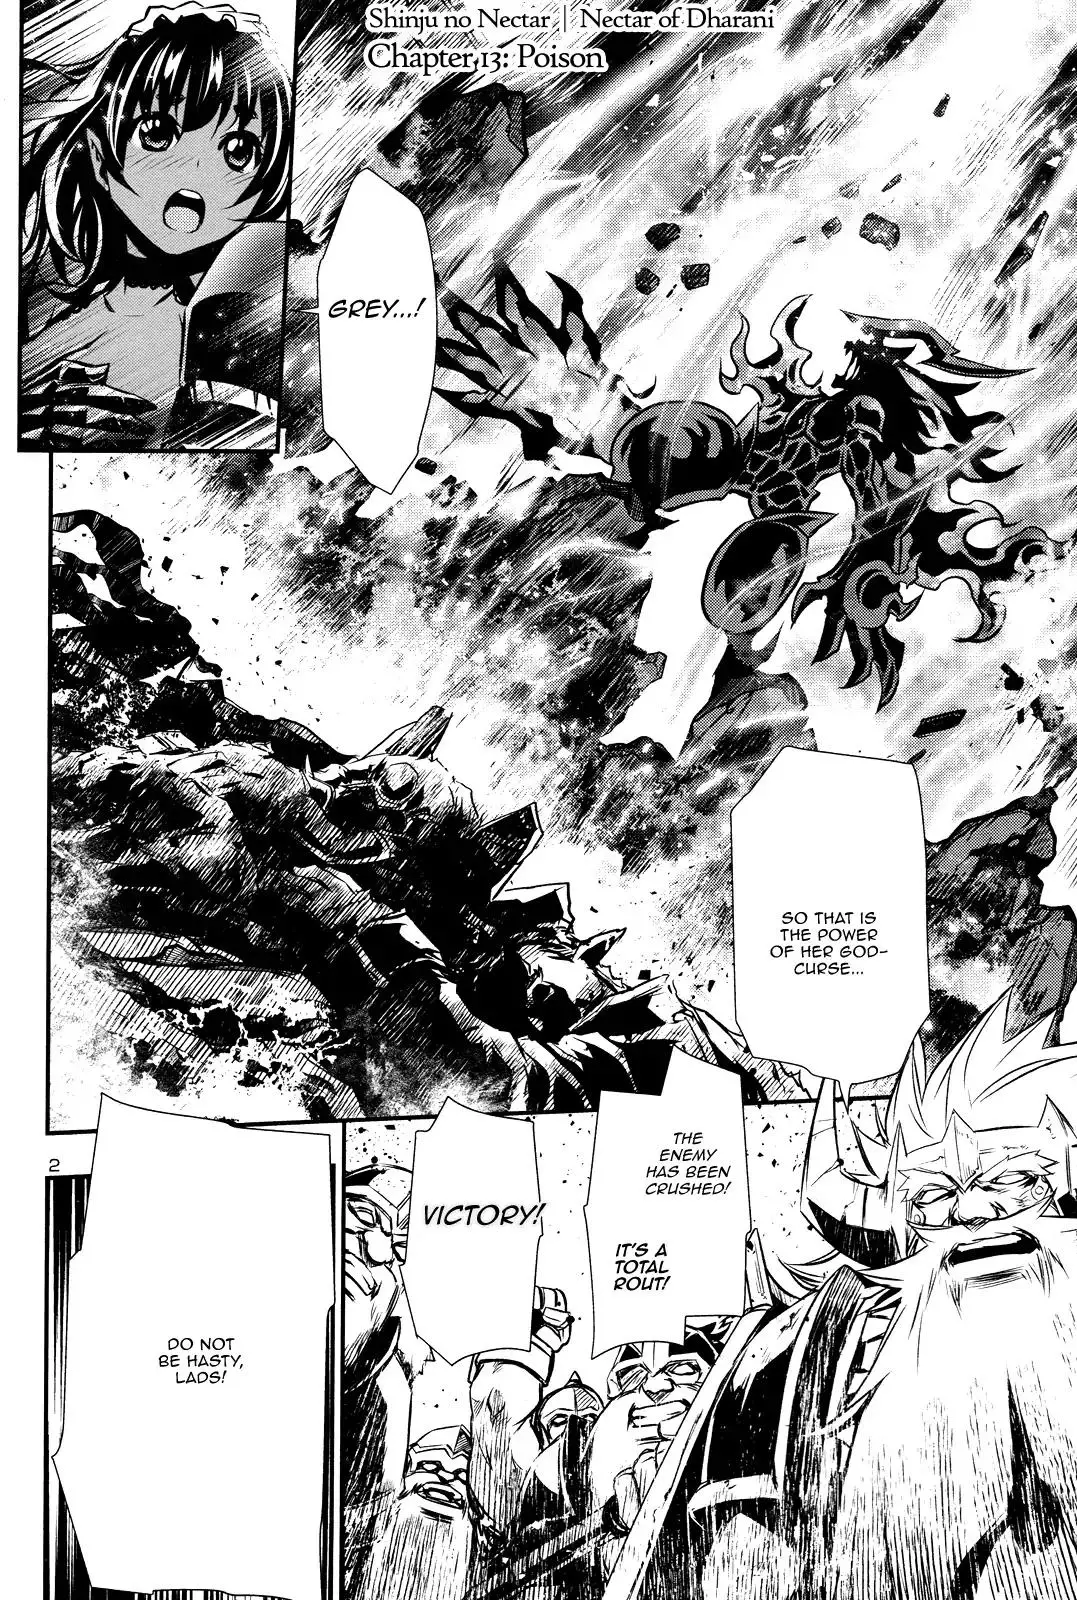 Shinju no Nectar - 13 page 0